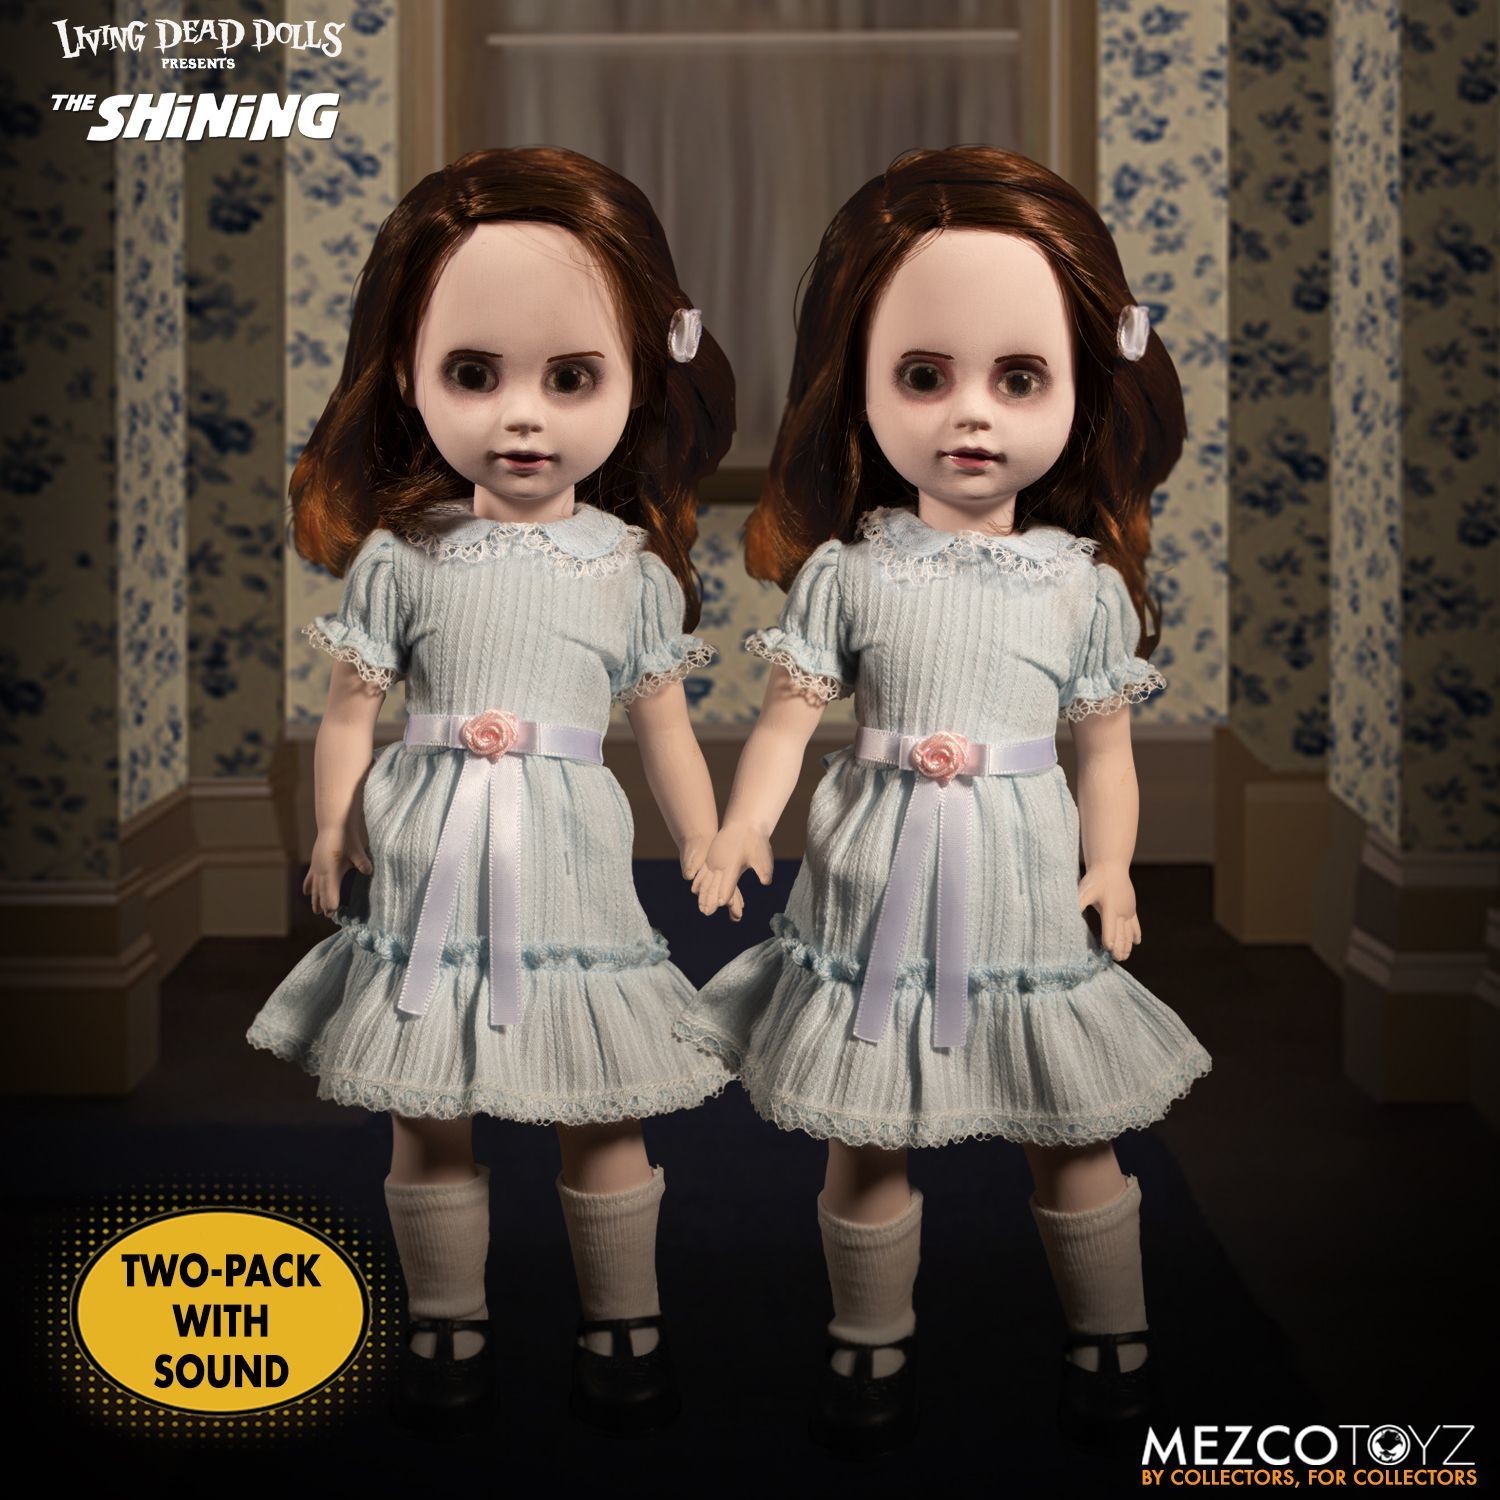 Mezco Living Dead Dolls The Shining: Talking Grady Twins